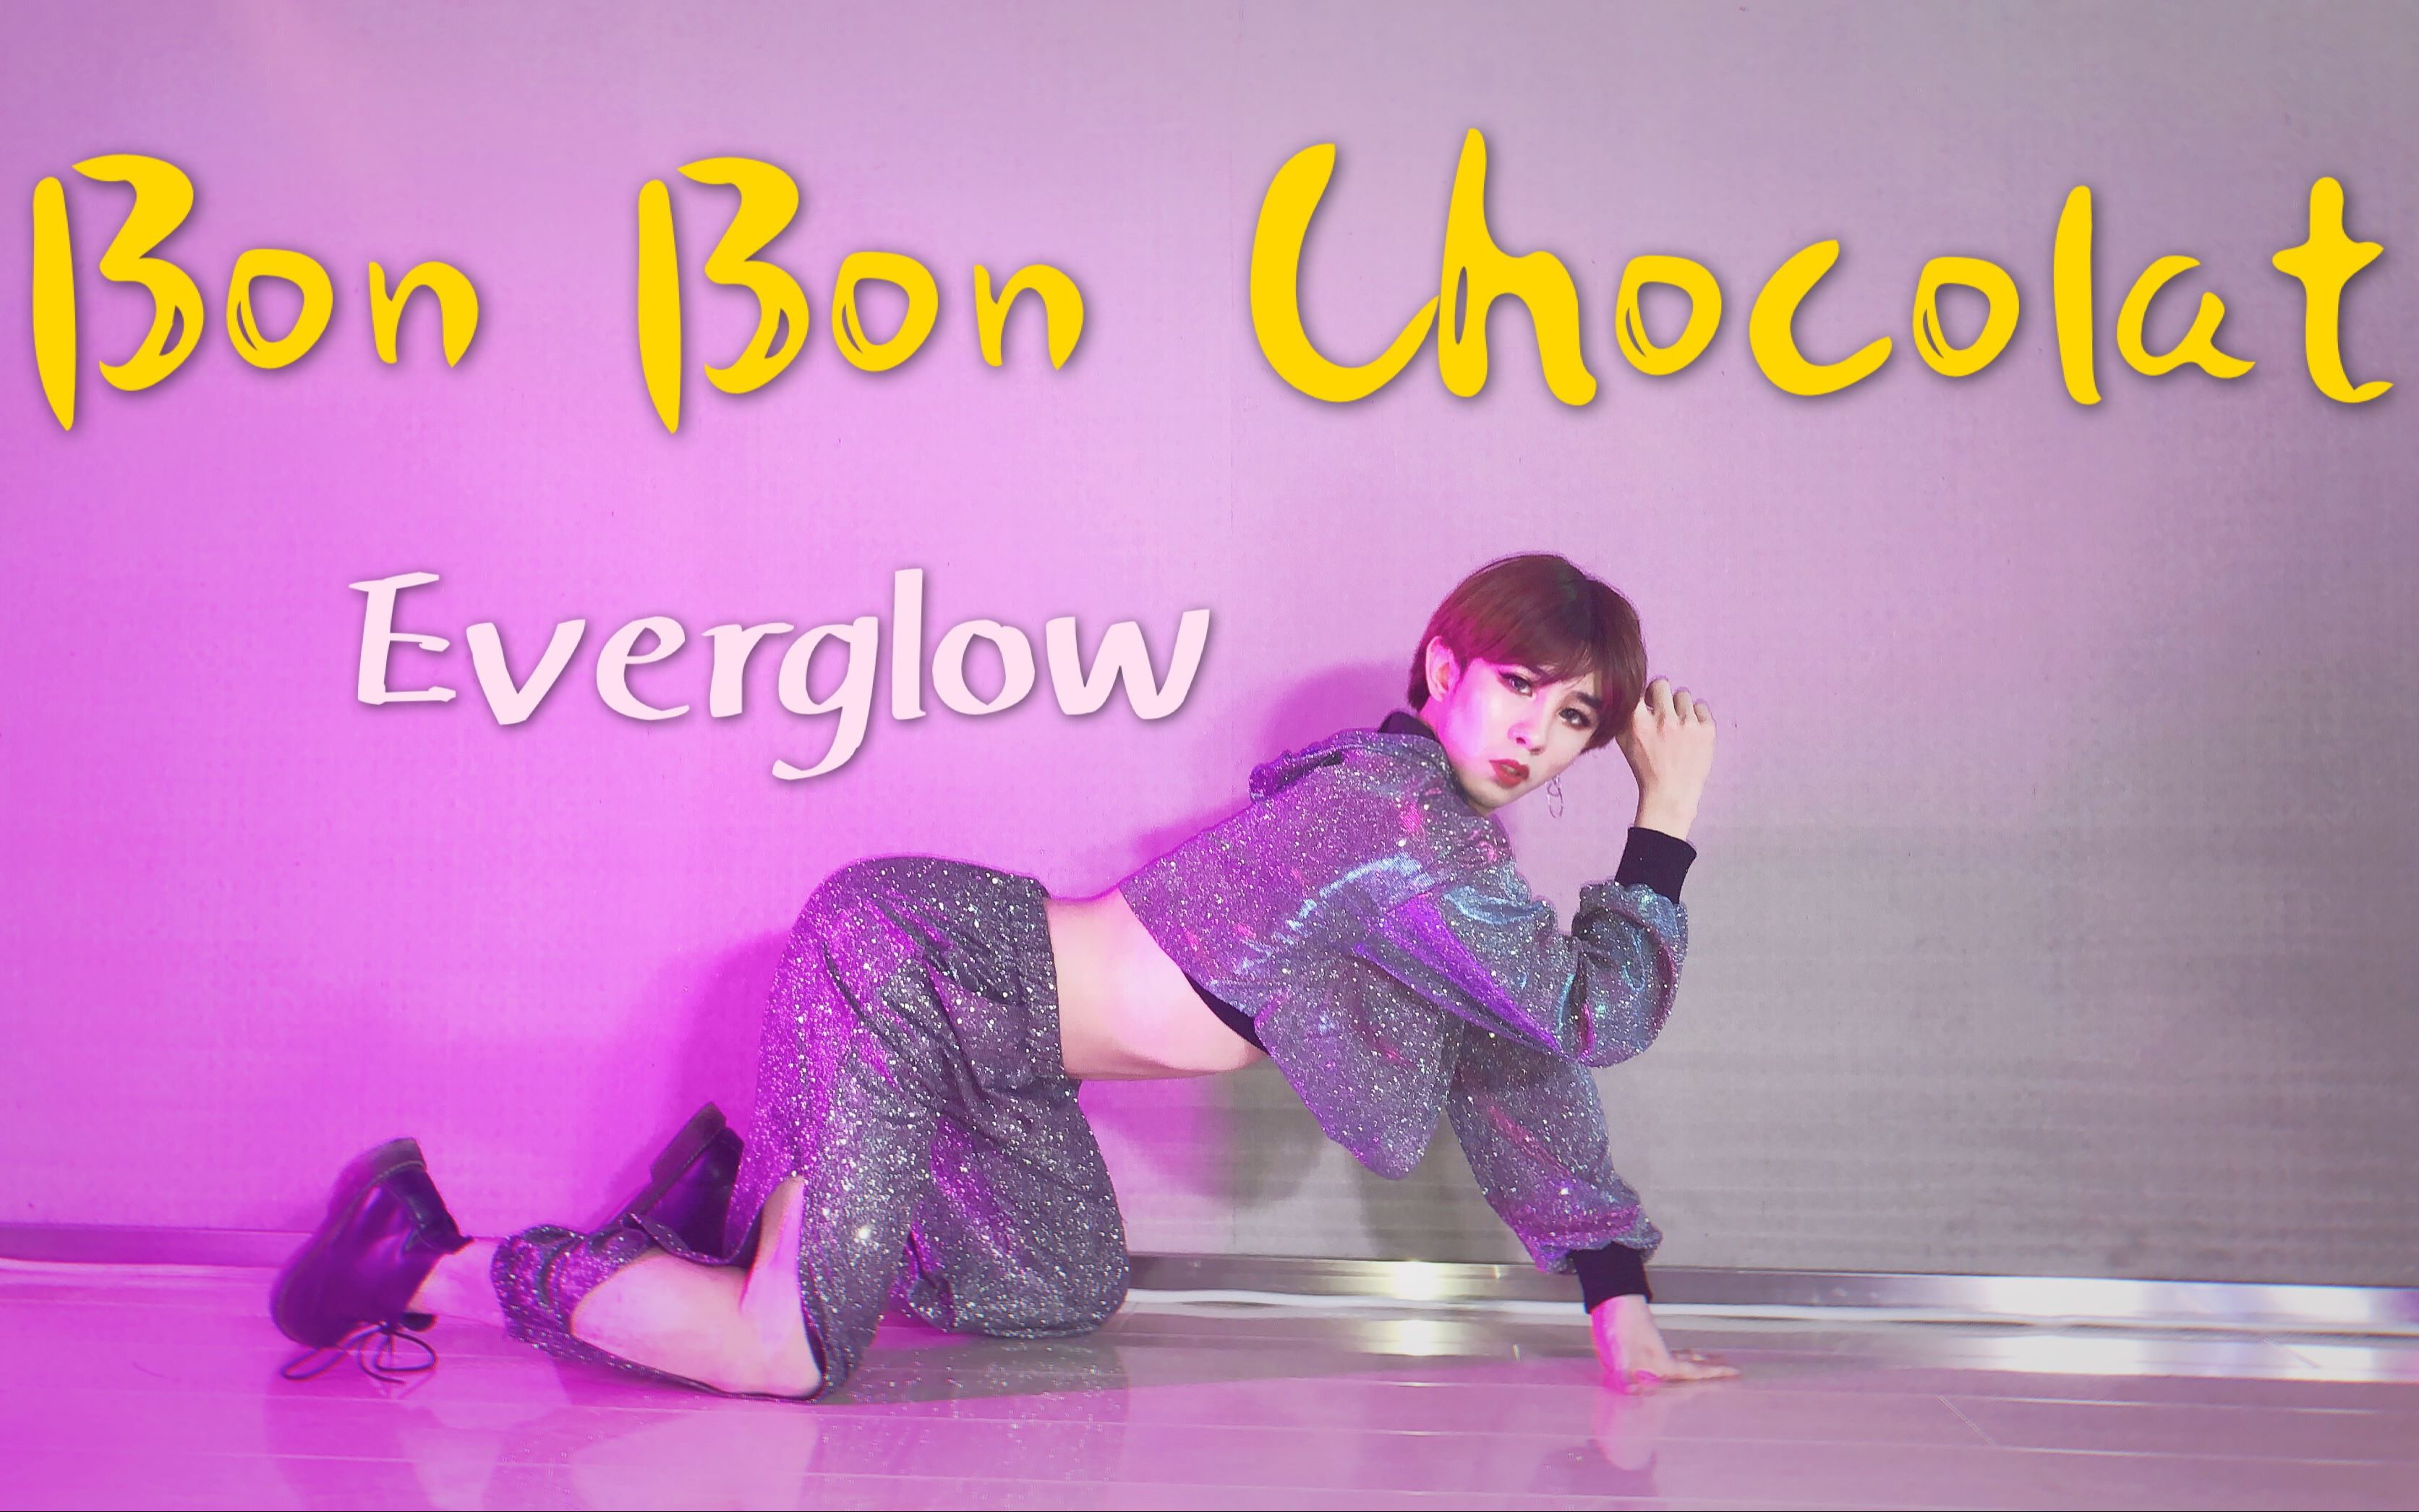 【大哲】男生实力翻跳Everglow出道曲《Bon Bon Chocolat》 一身的Bling Bling还满意吗？！